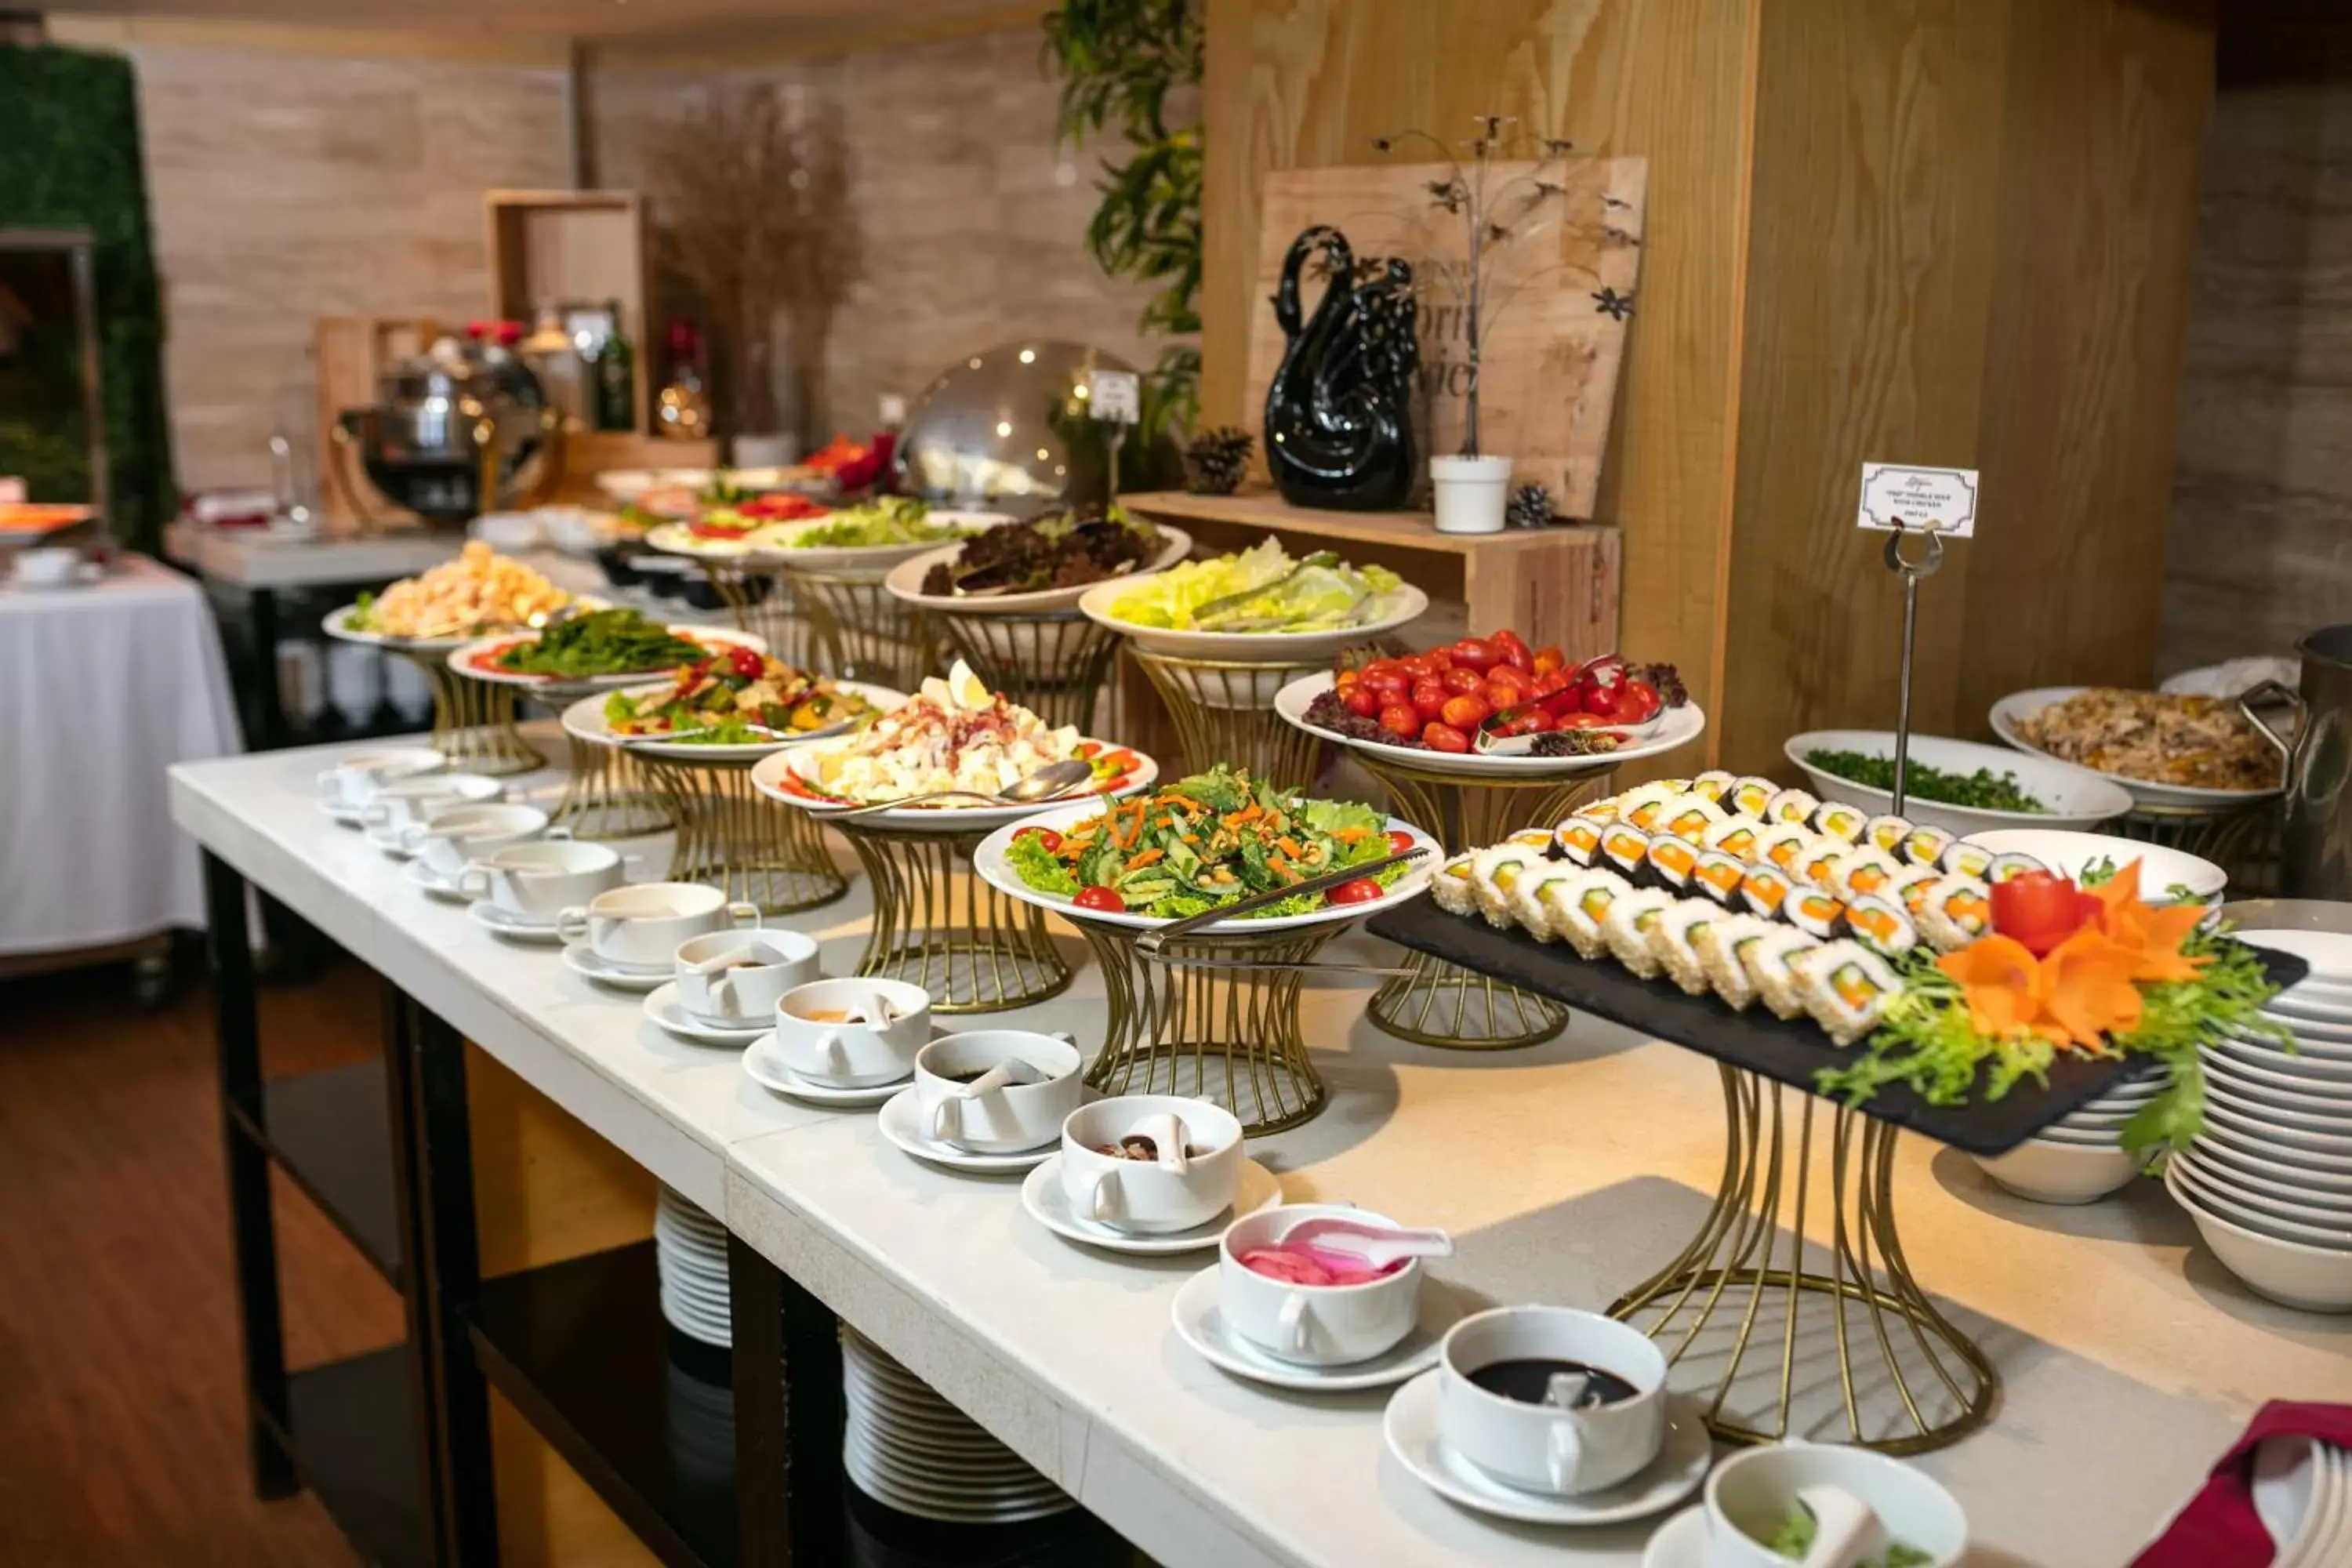 Buffet breakfast in La Casa Hanoi Hotel